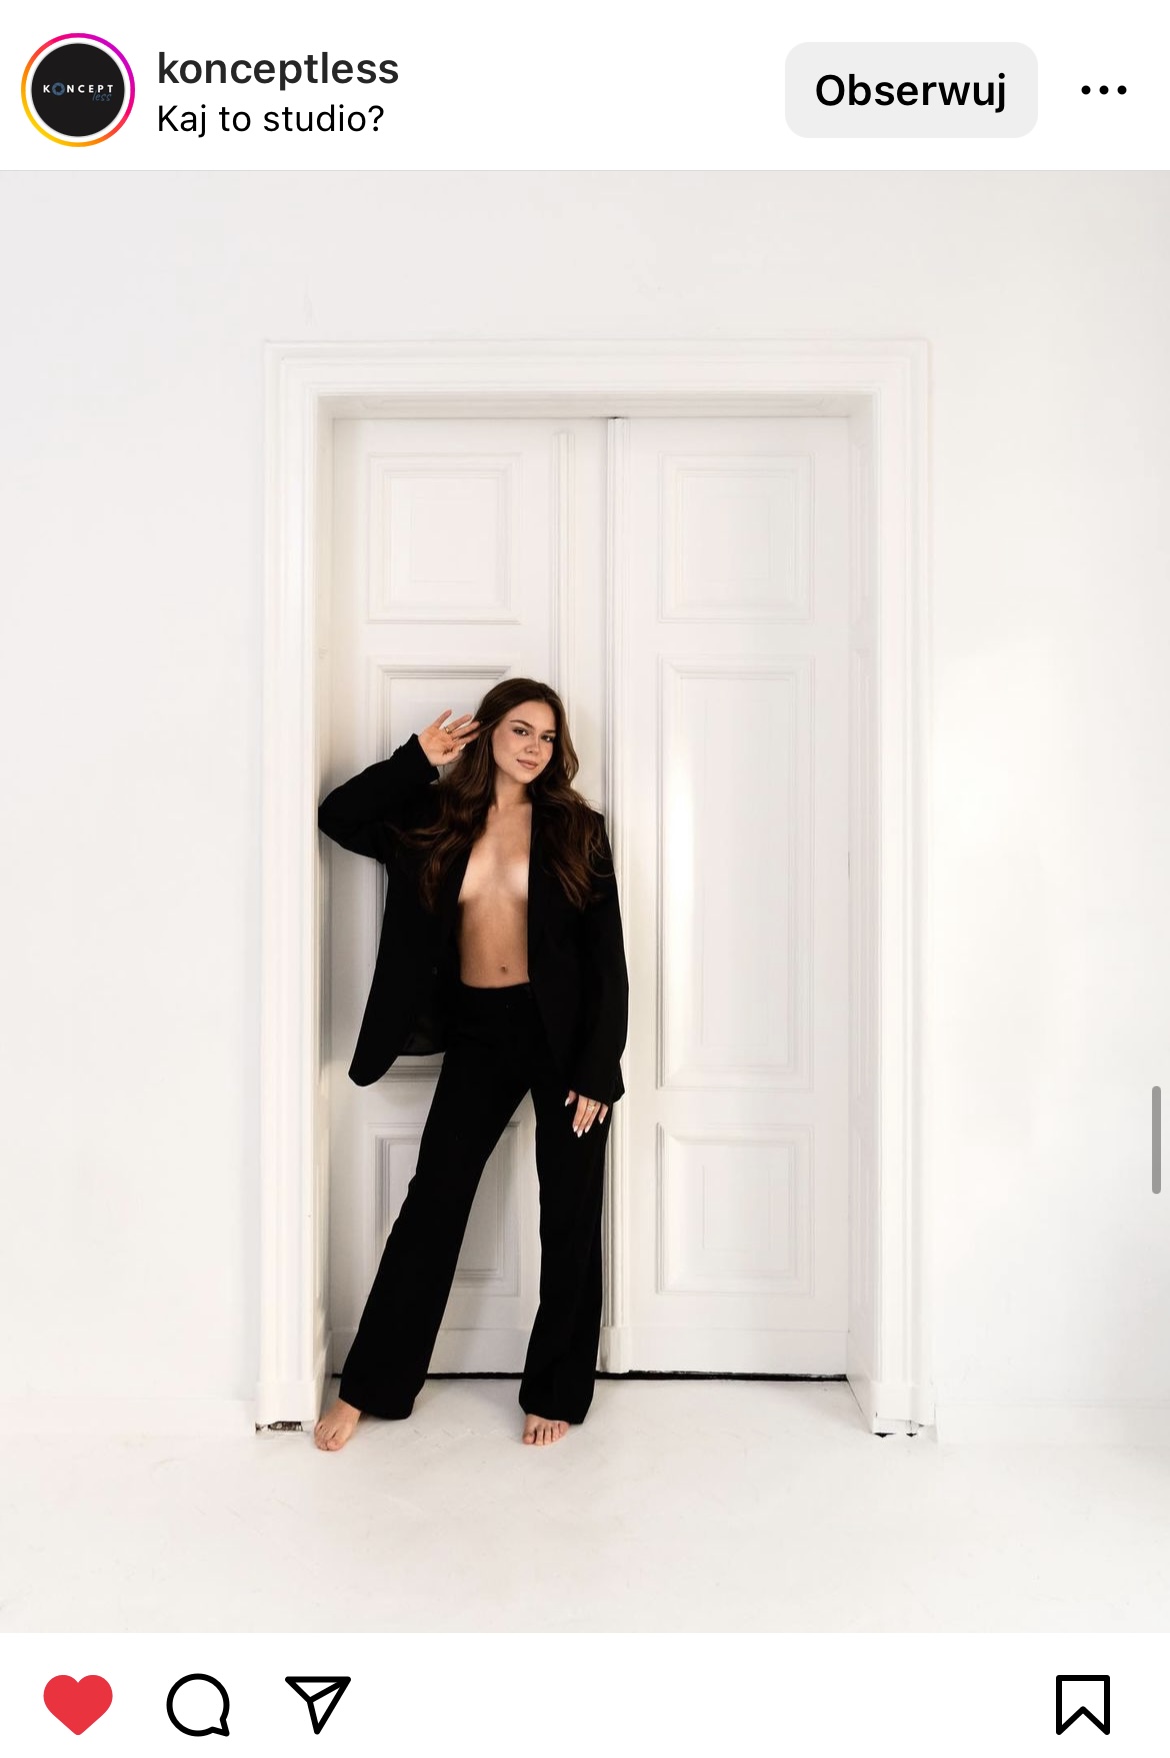 Kobieta ubrana tylko w czarny garnitur stojąca w białych drzwiach